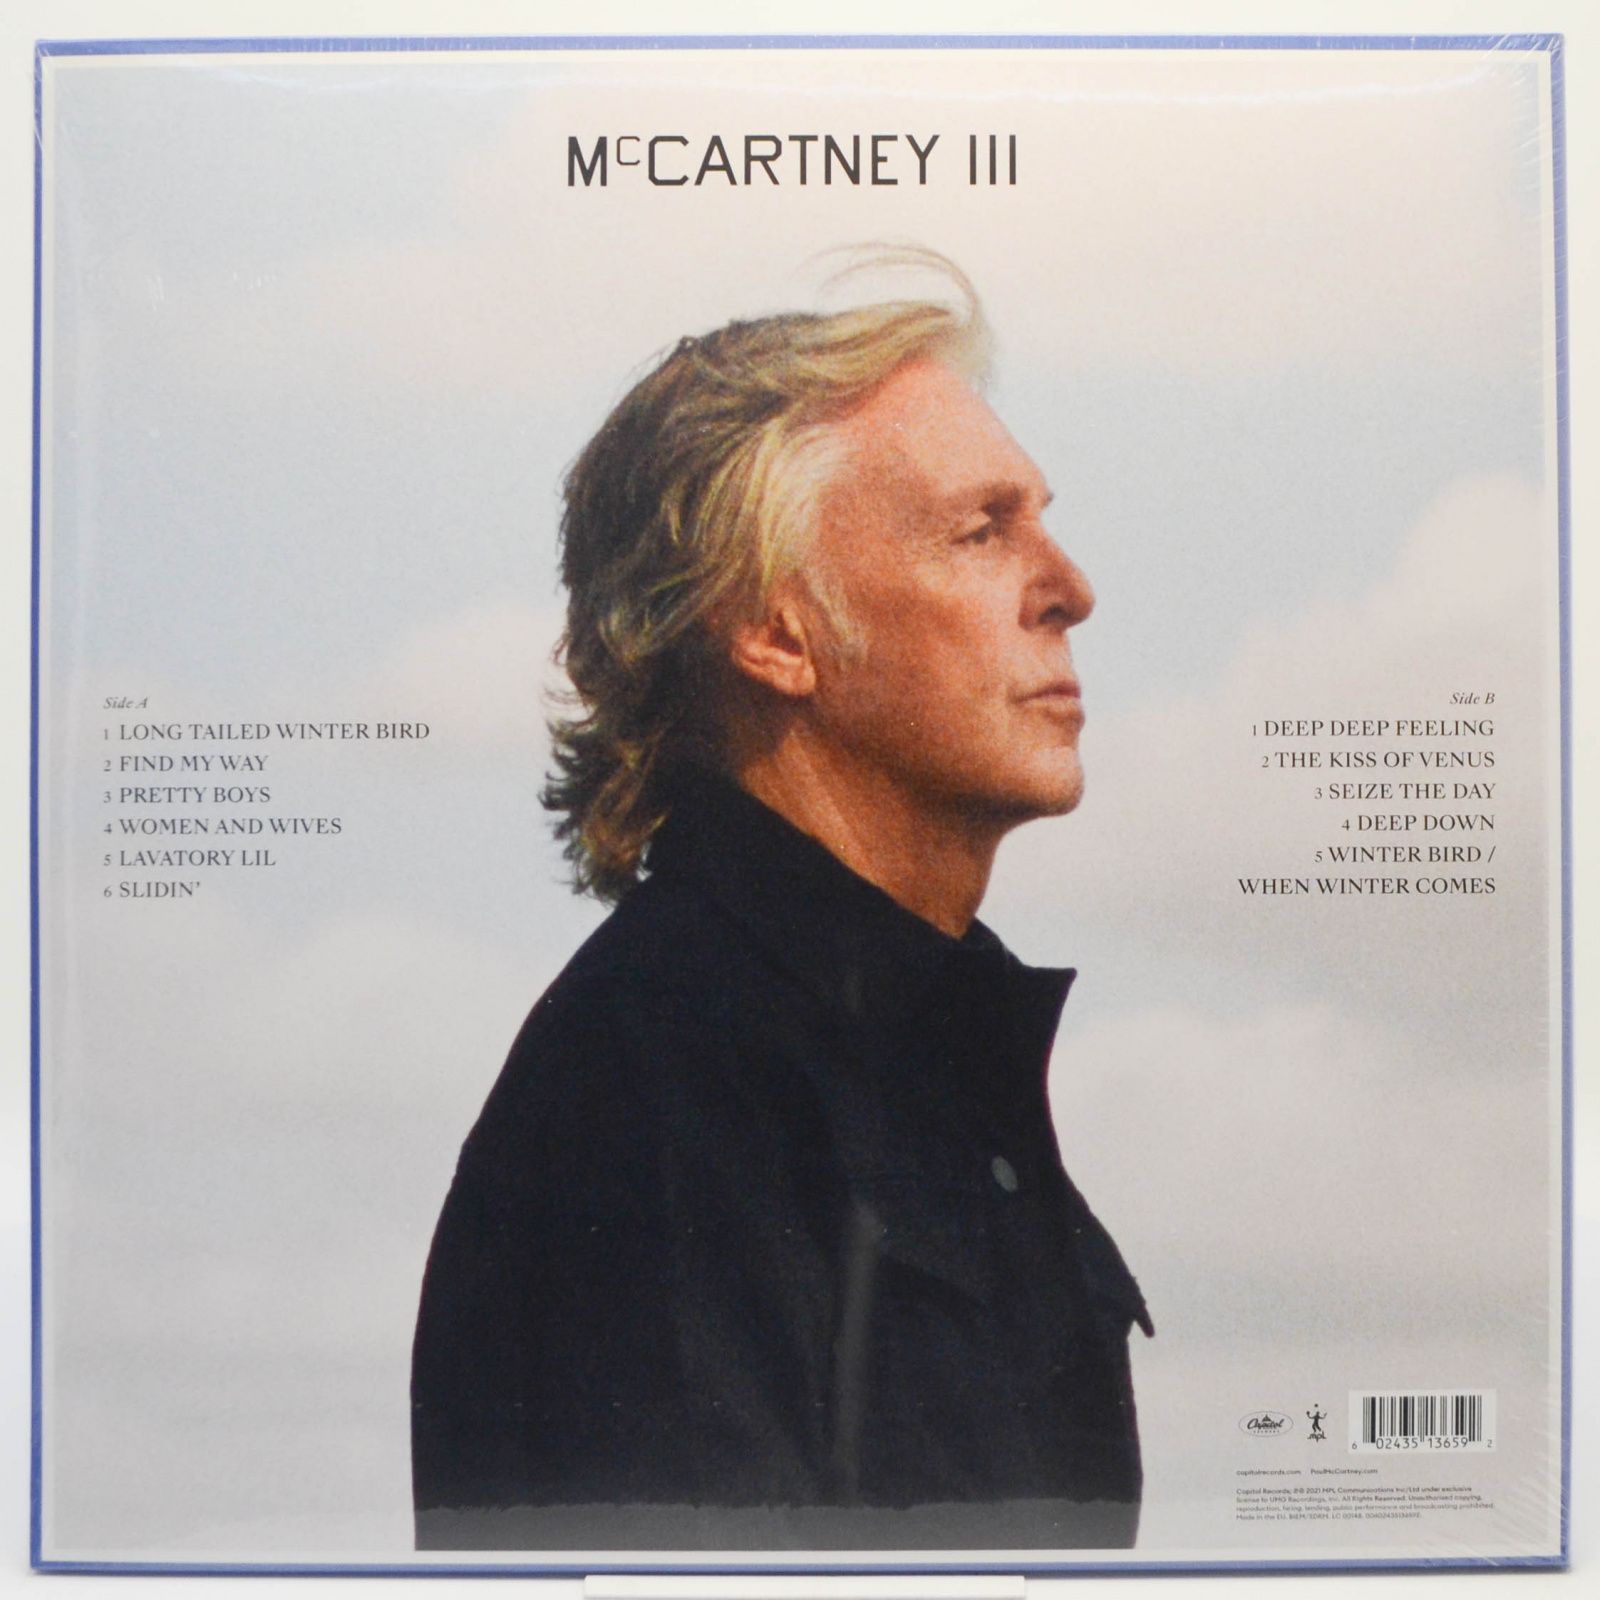 Paul McCartney — Paul McCartney, 2020